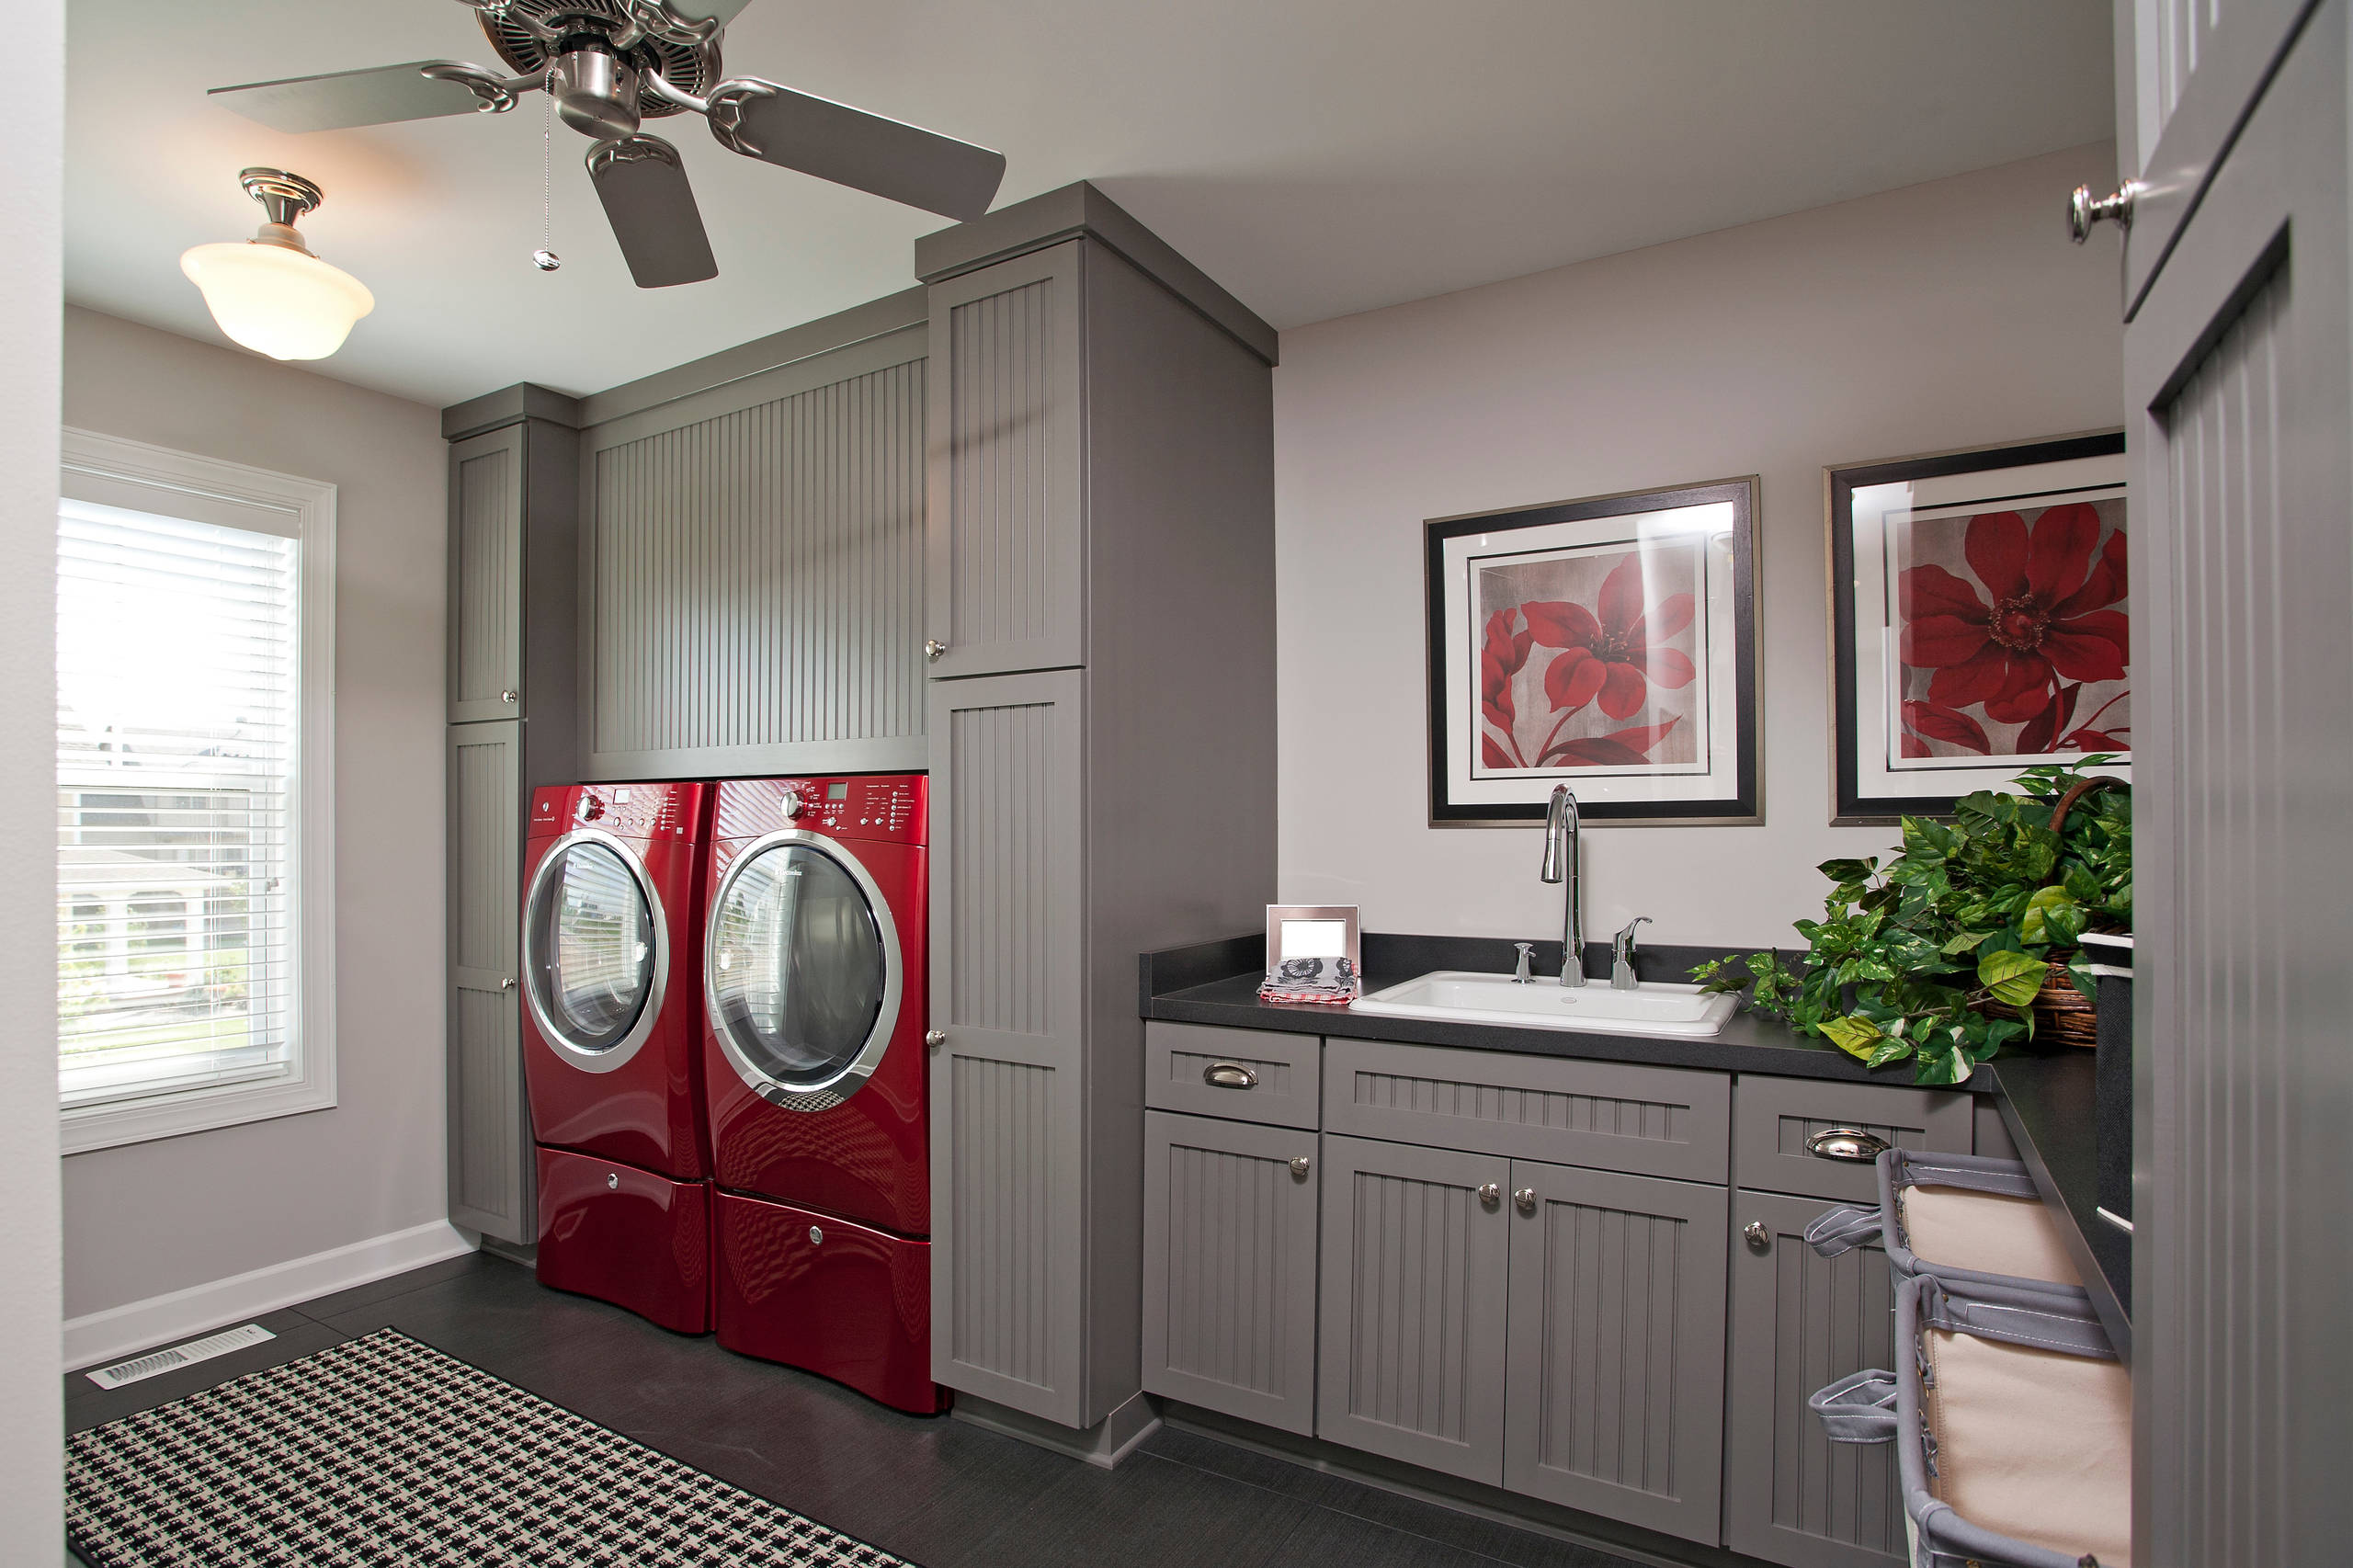 Red Washer Dryer - Photos & Ideas | Houzz